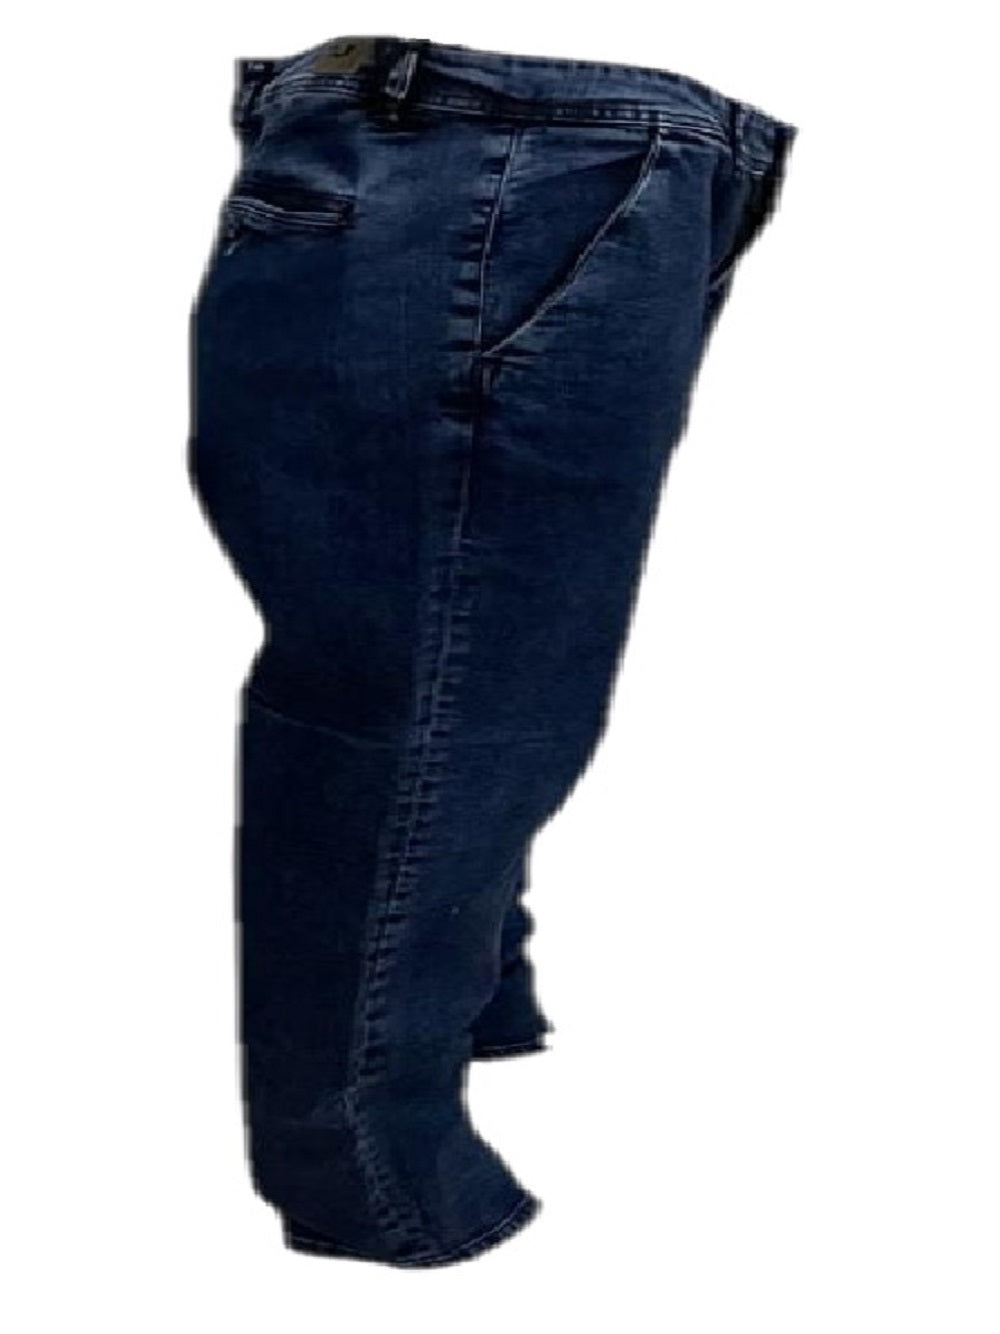 Jeans Gian Marco Venturi GUM63 Blu dal taglio regular, denim blu scuro